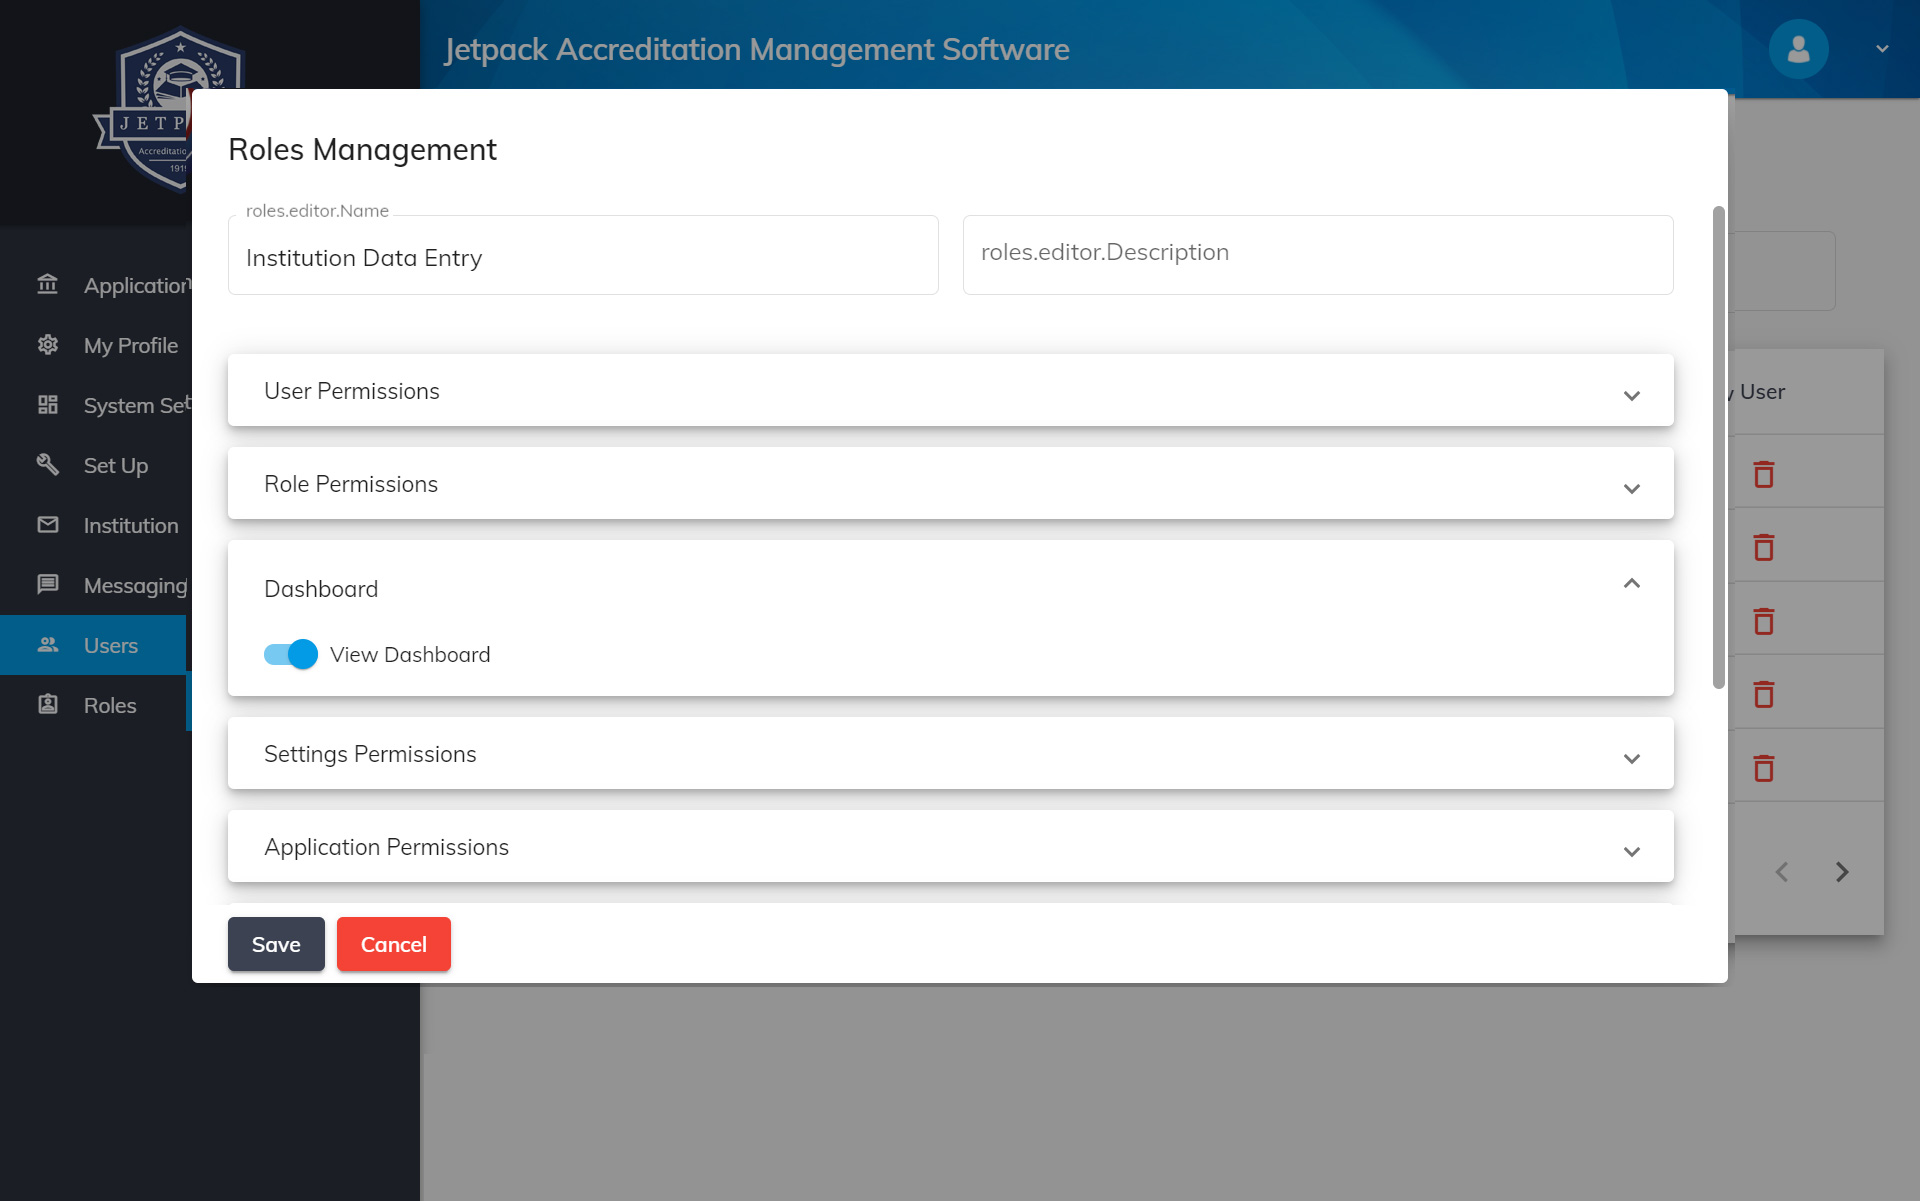 Jetpack Accreditation Management roles management